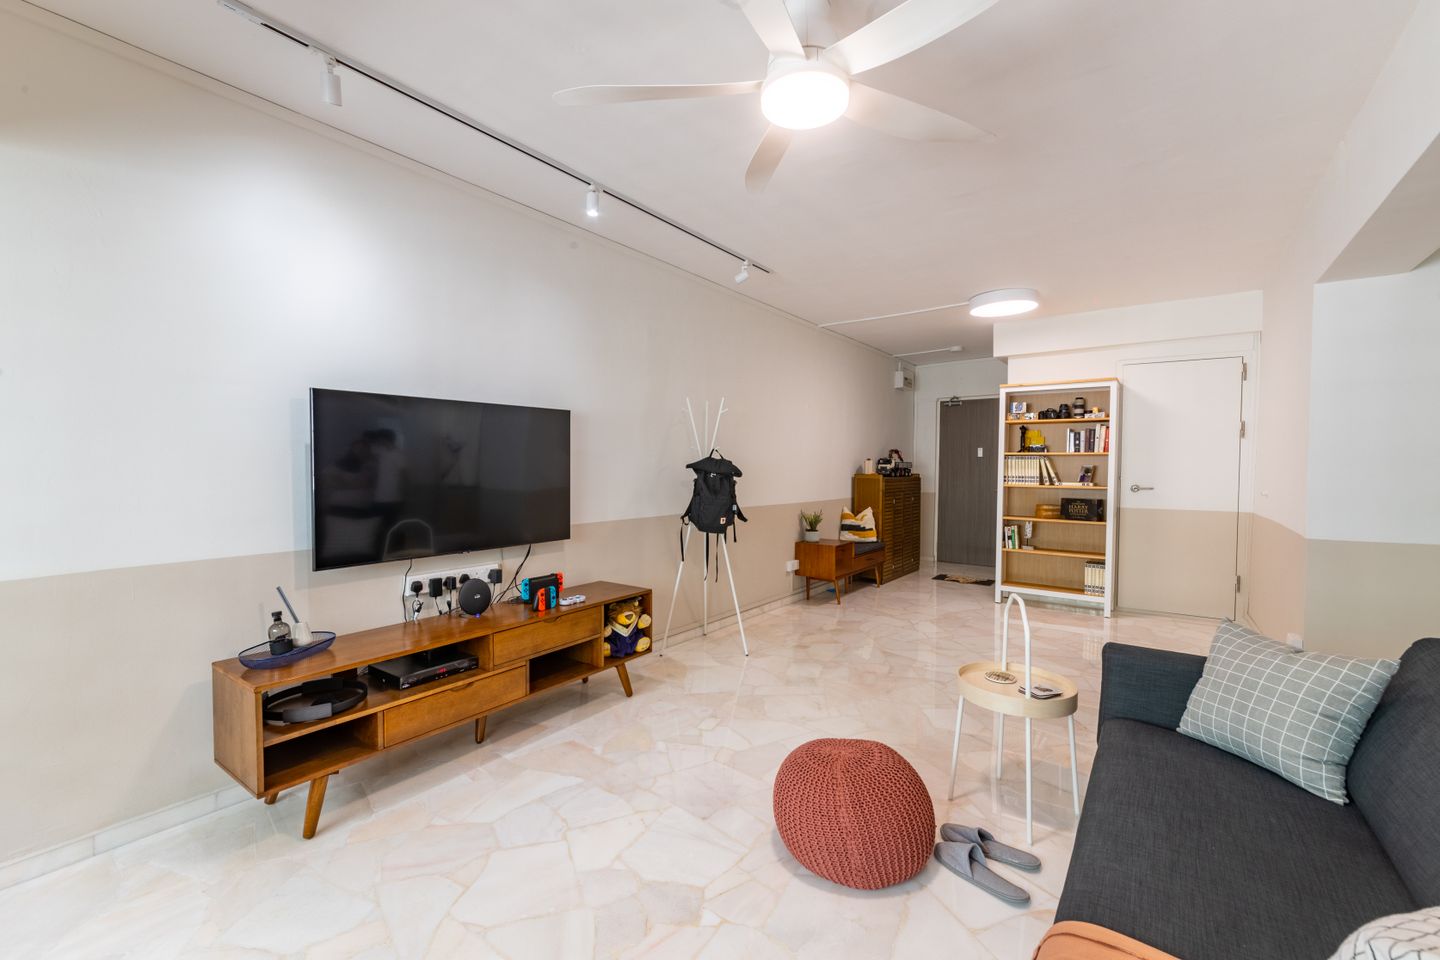 Spacious Living Room With Minimalist Interior Design - Livspace